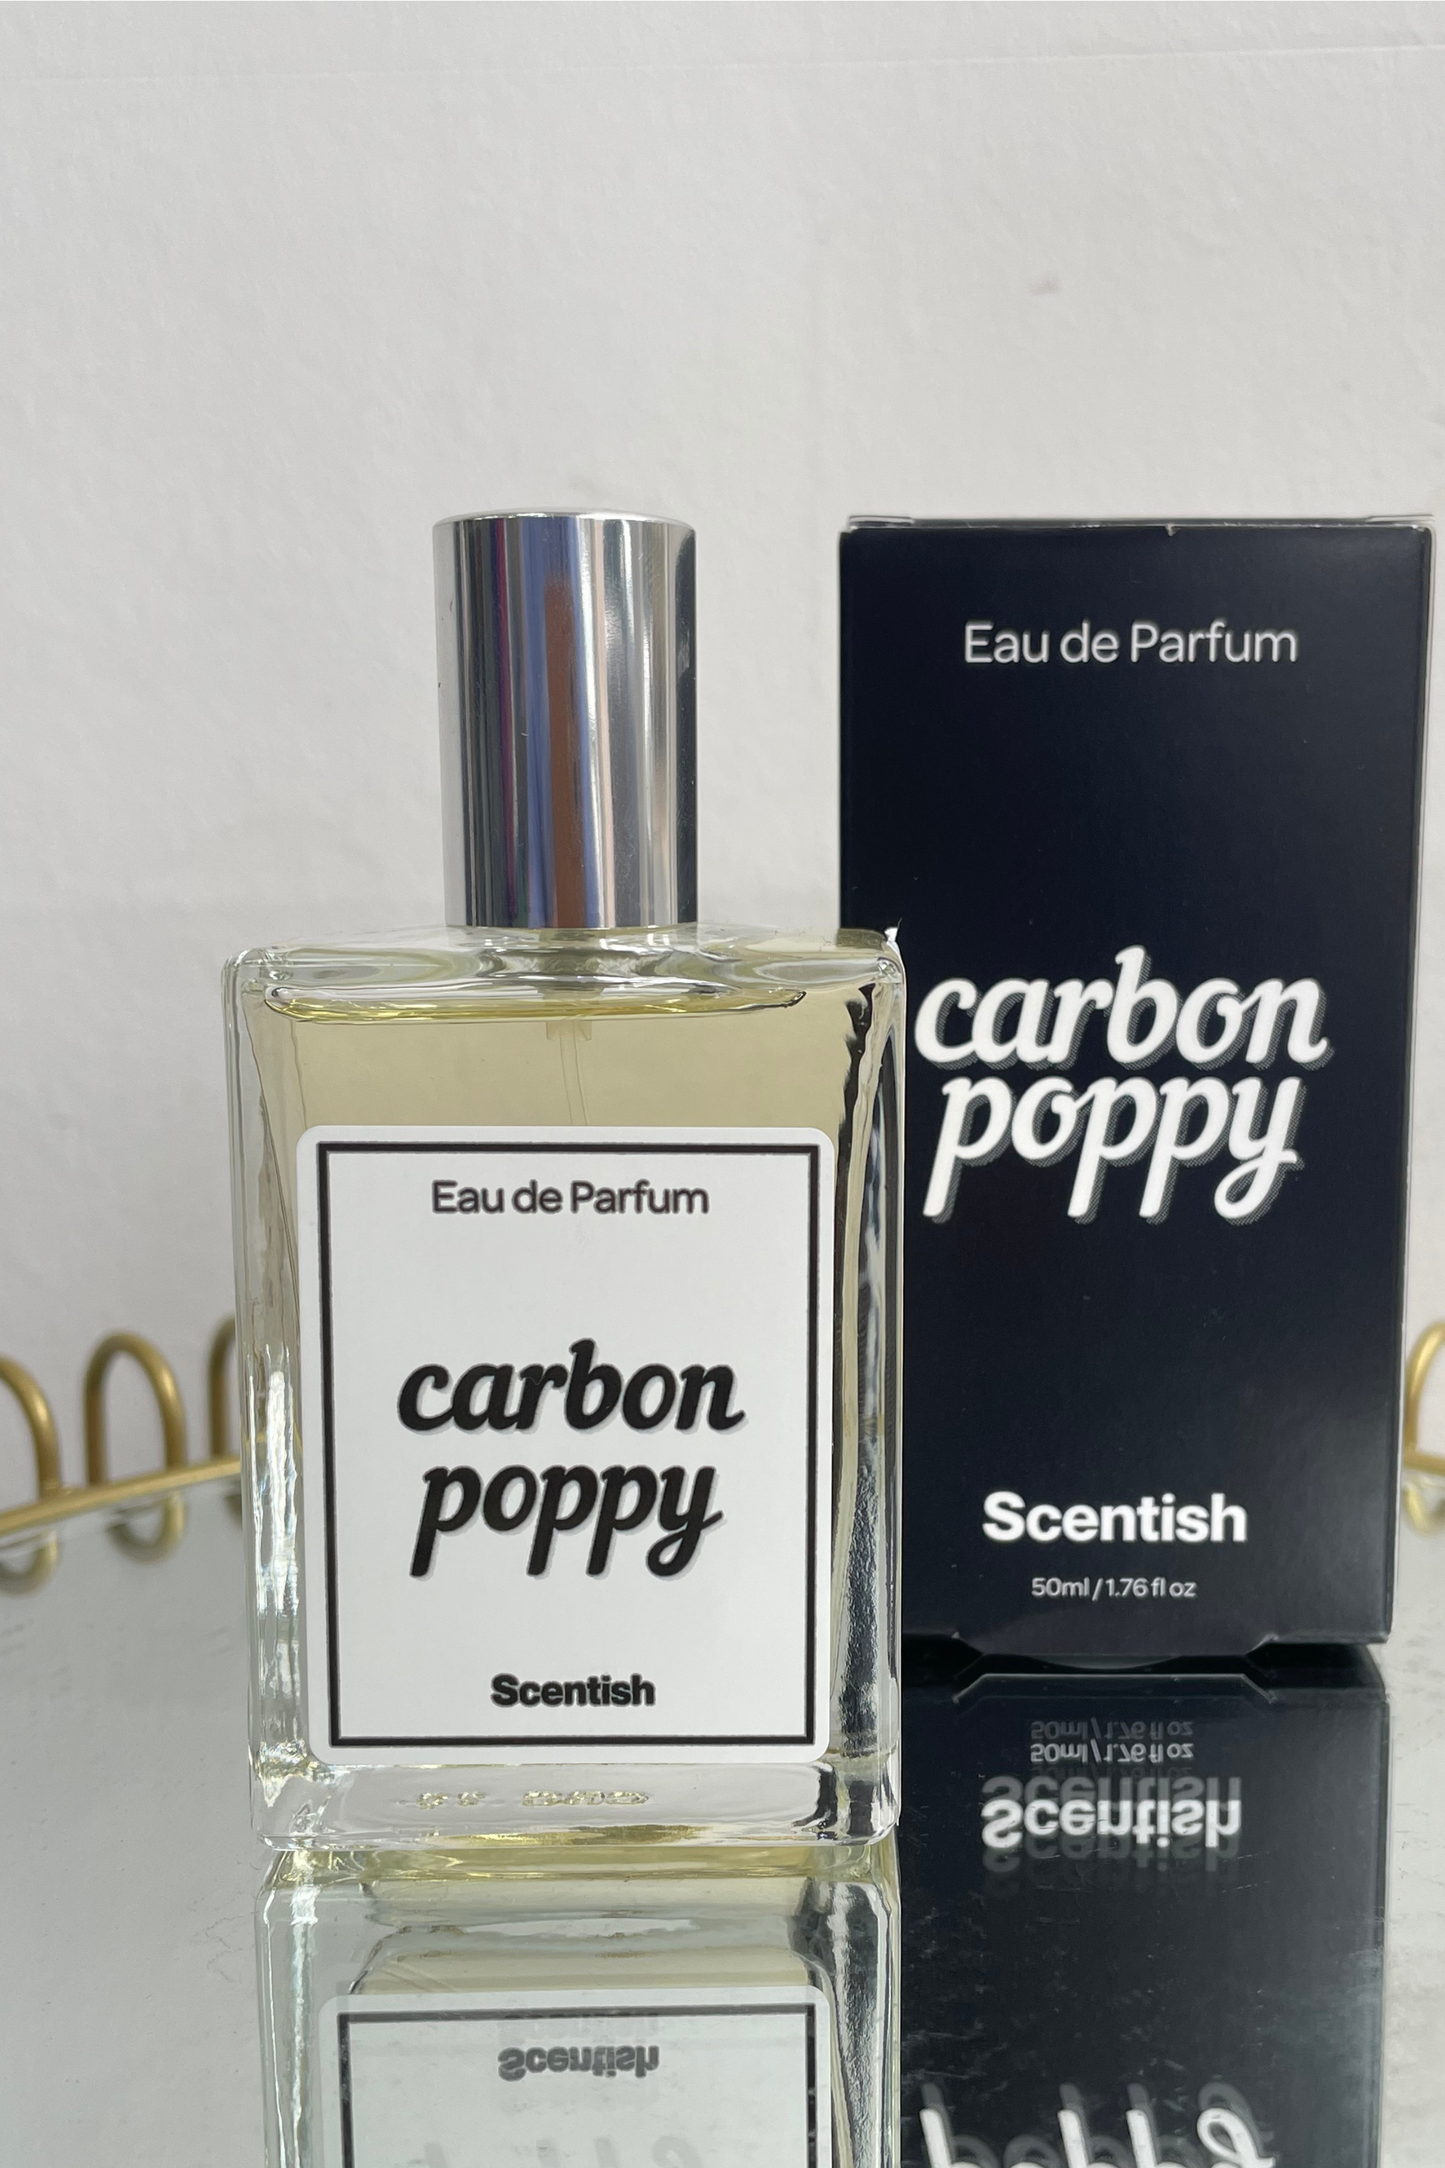 Carbon Poppy (Black opium inspired) Perfume